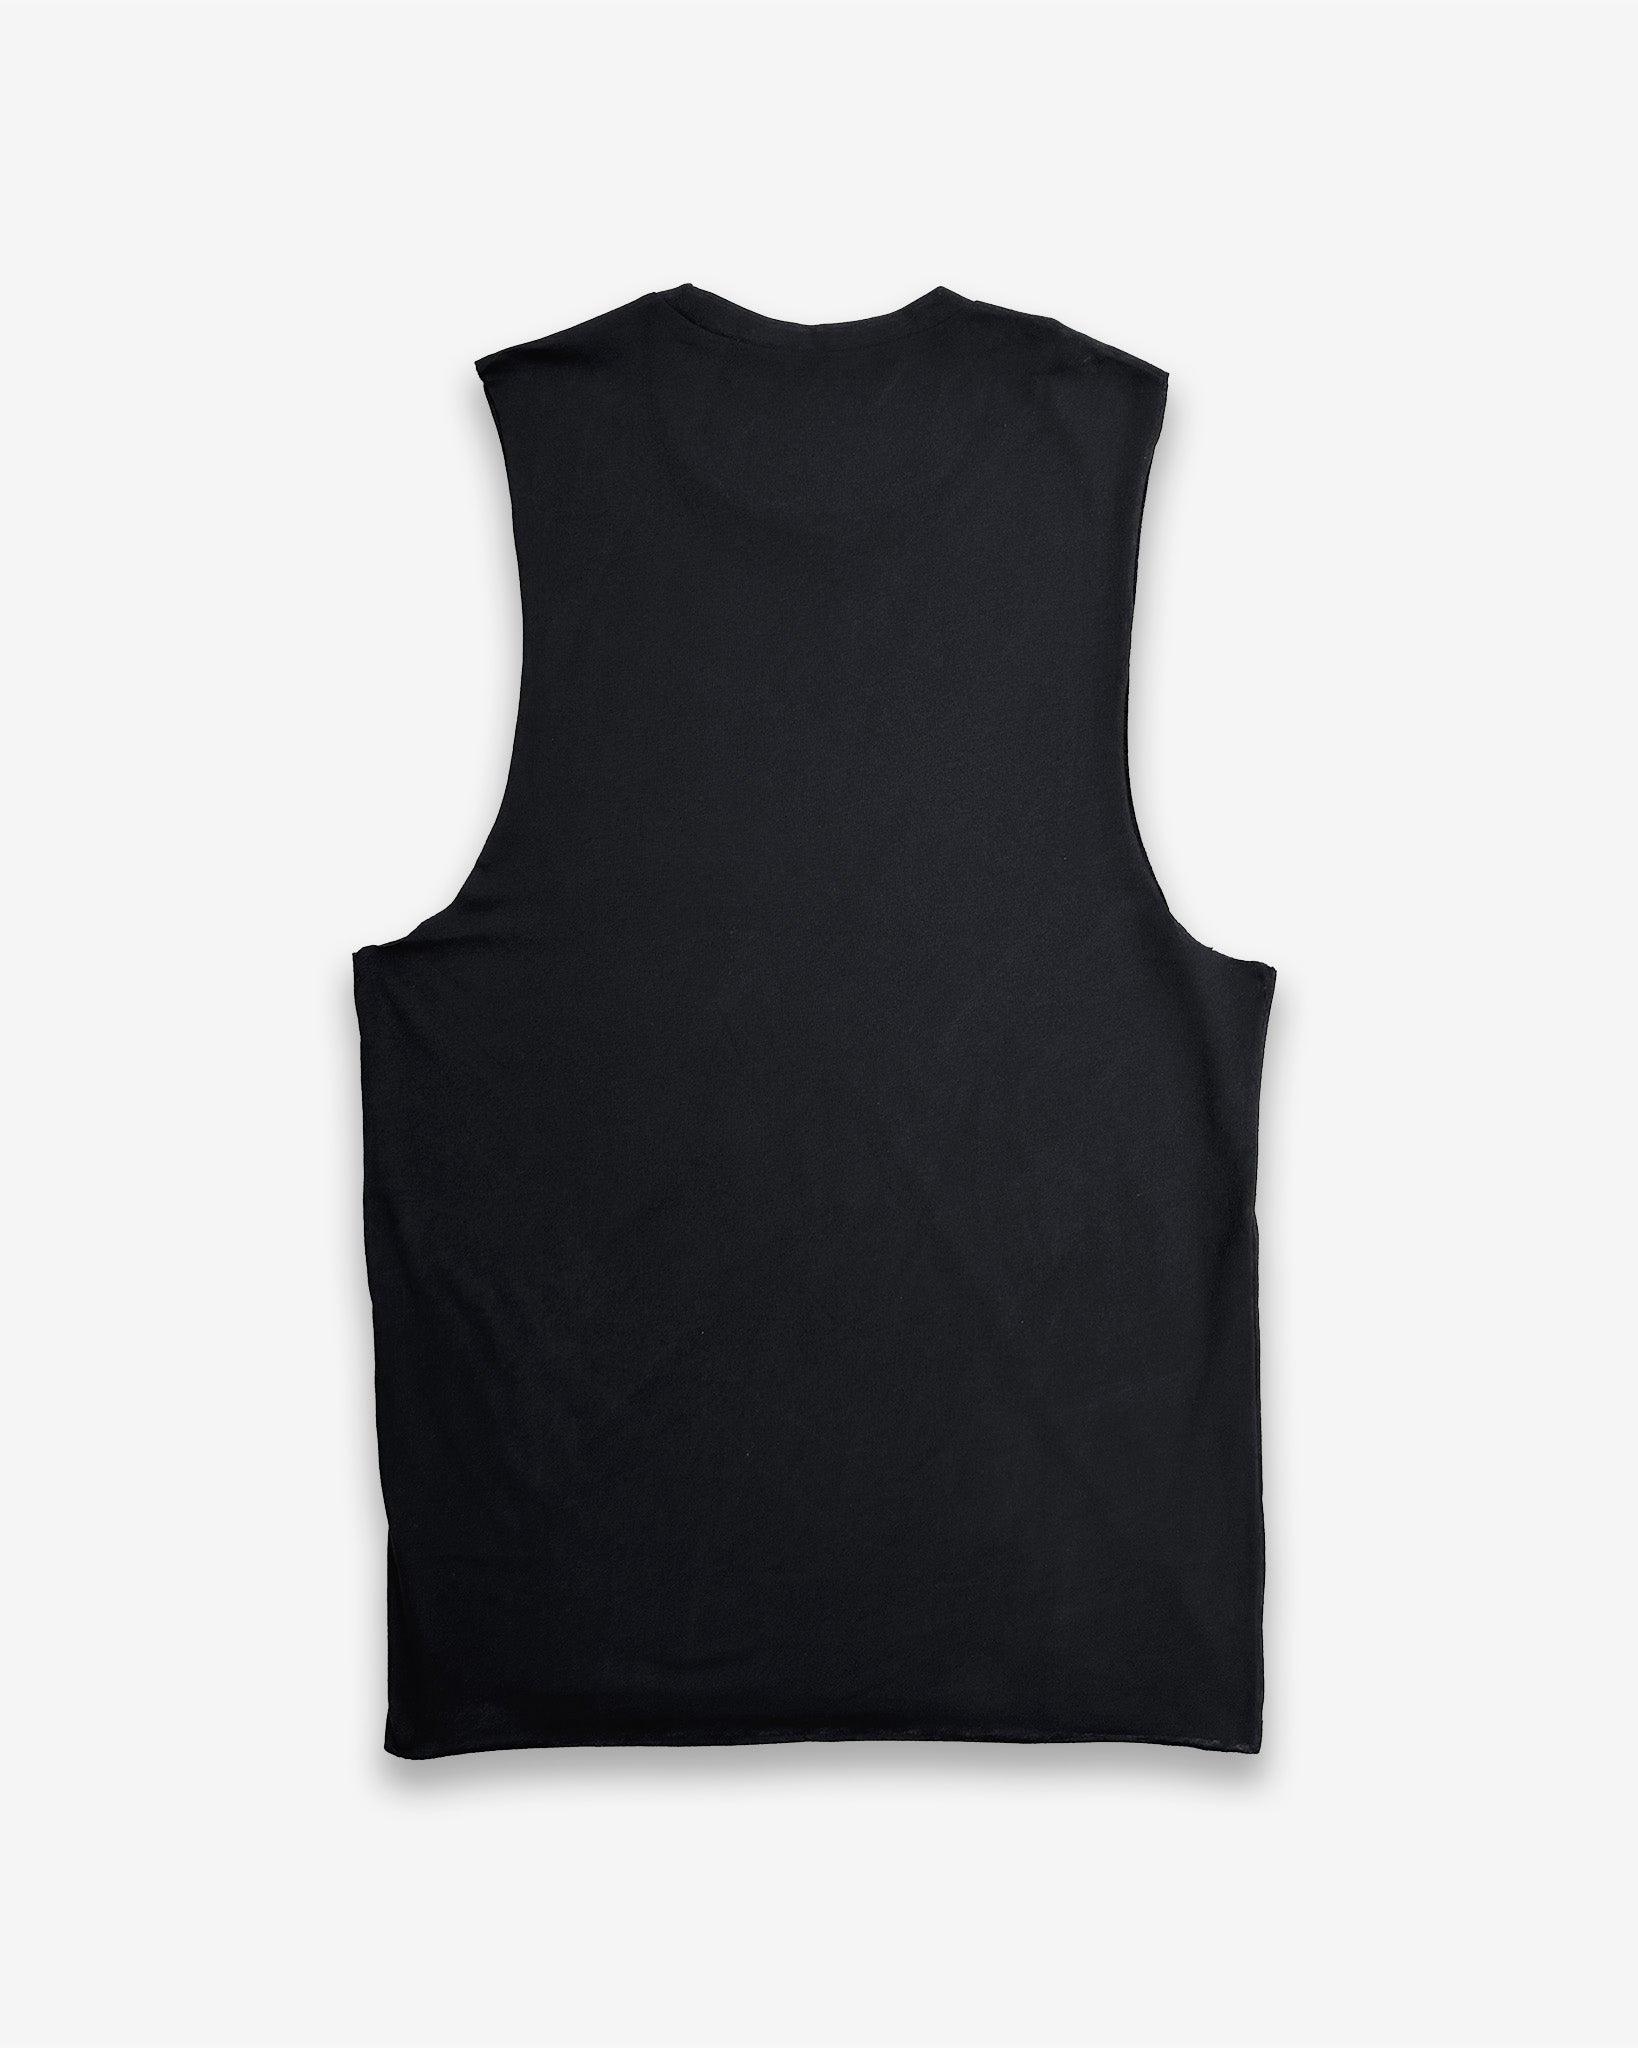 Stealth™ Signature Black Vest – asidefitness